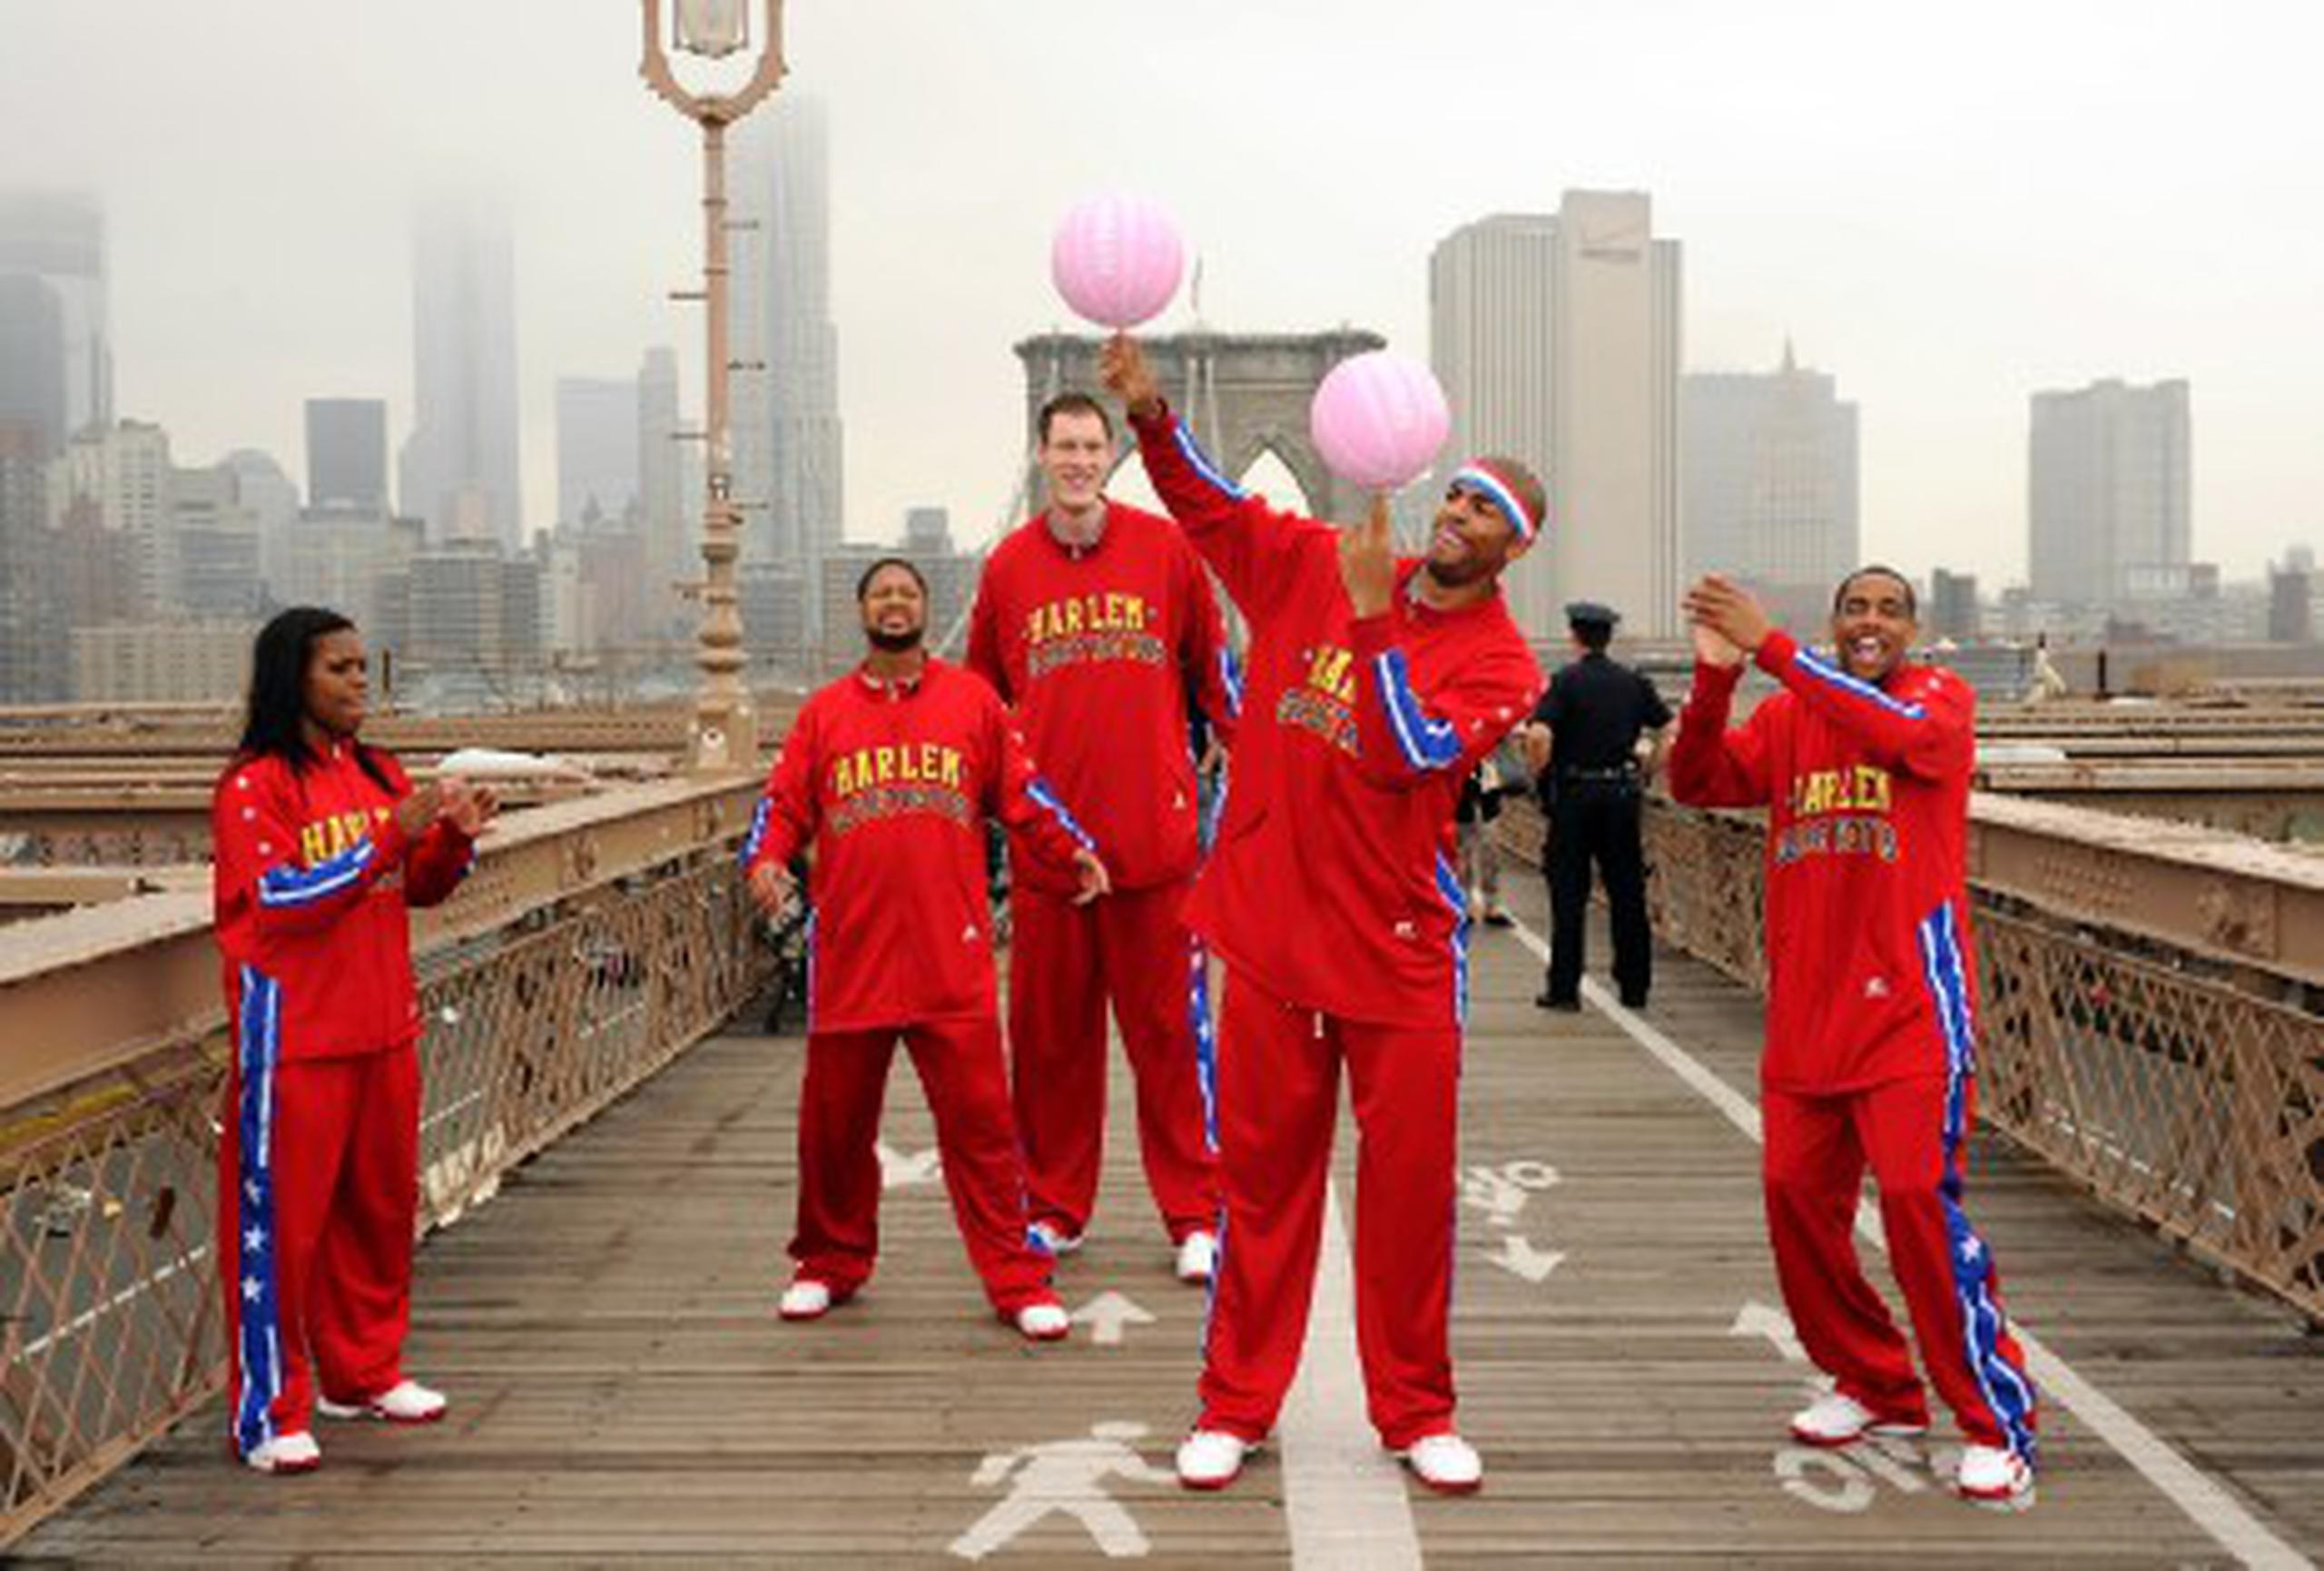 Cinco de los integrantes de los Globetrotters (trotamundos) cruzaron hoy el puente de Brooklyn con una pequeña muestra de lo que el público podrá ver en su próximo espectáculo, bajo la atenta mirada de turistas y curiosos que se sorprendieron al observar las habilidades de los jugadores con el balón. (Prensa Asociada)